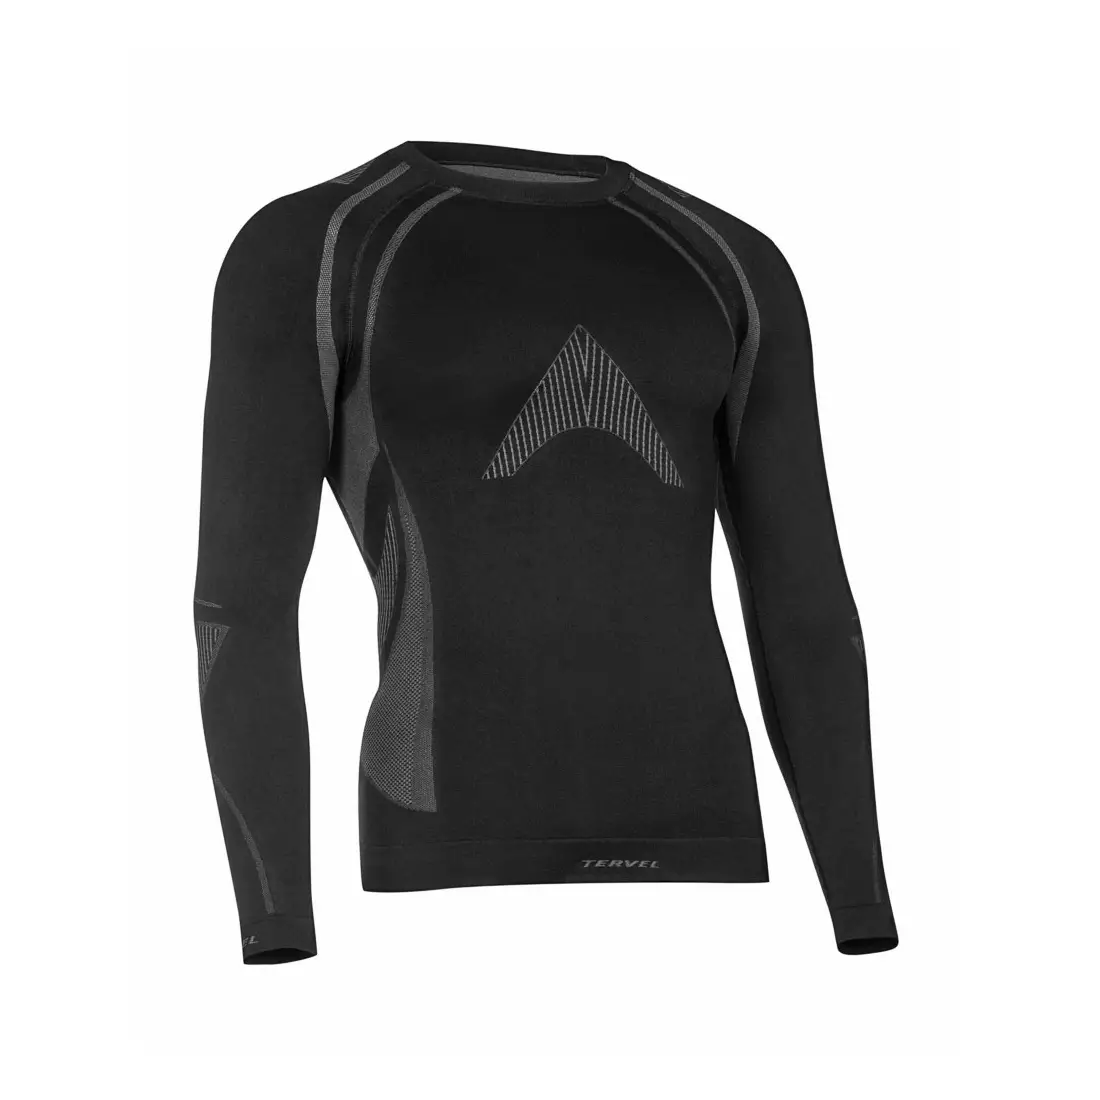 TERVEL - OPTILINE MOD-02 - pánské termo triko s dlouhým rukávem, barva: Černá a šedá